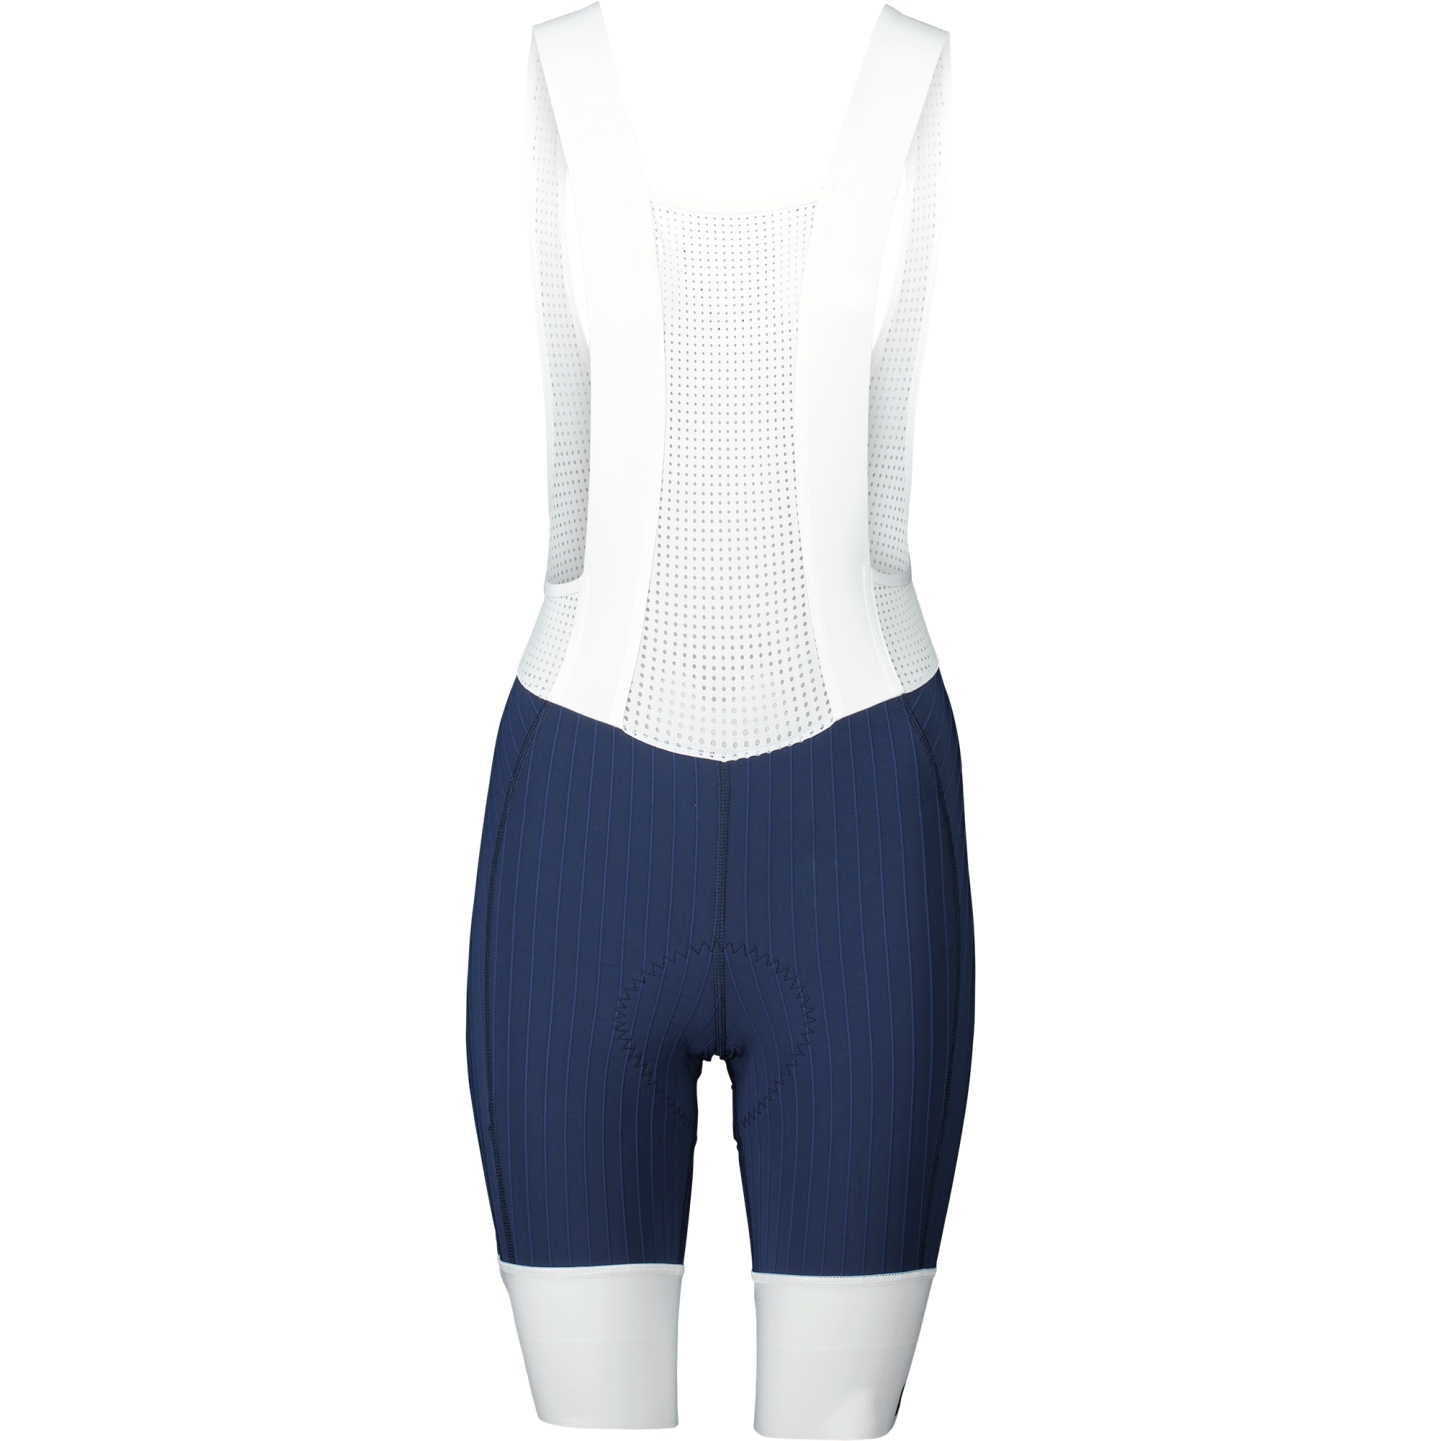 Image of POC Raceday Bib Shorts Women - 8521 Turmaline Navy/Hydrogen White